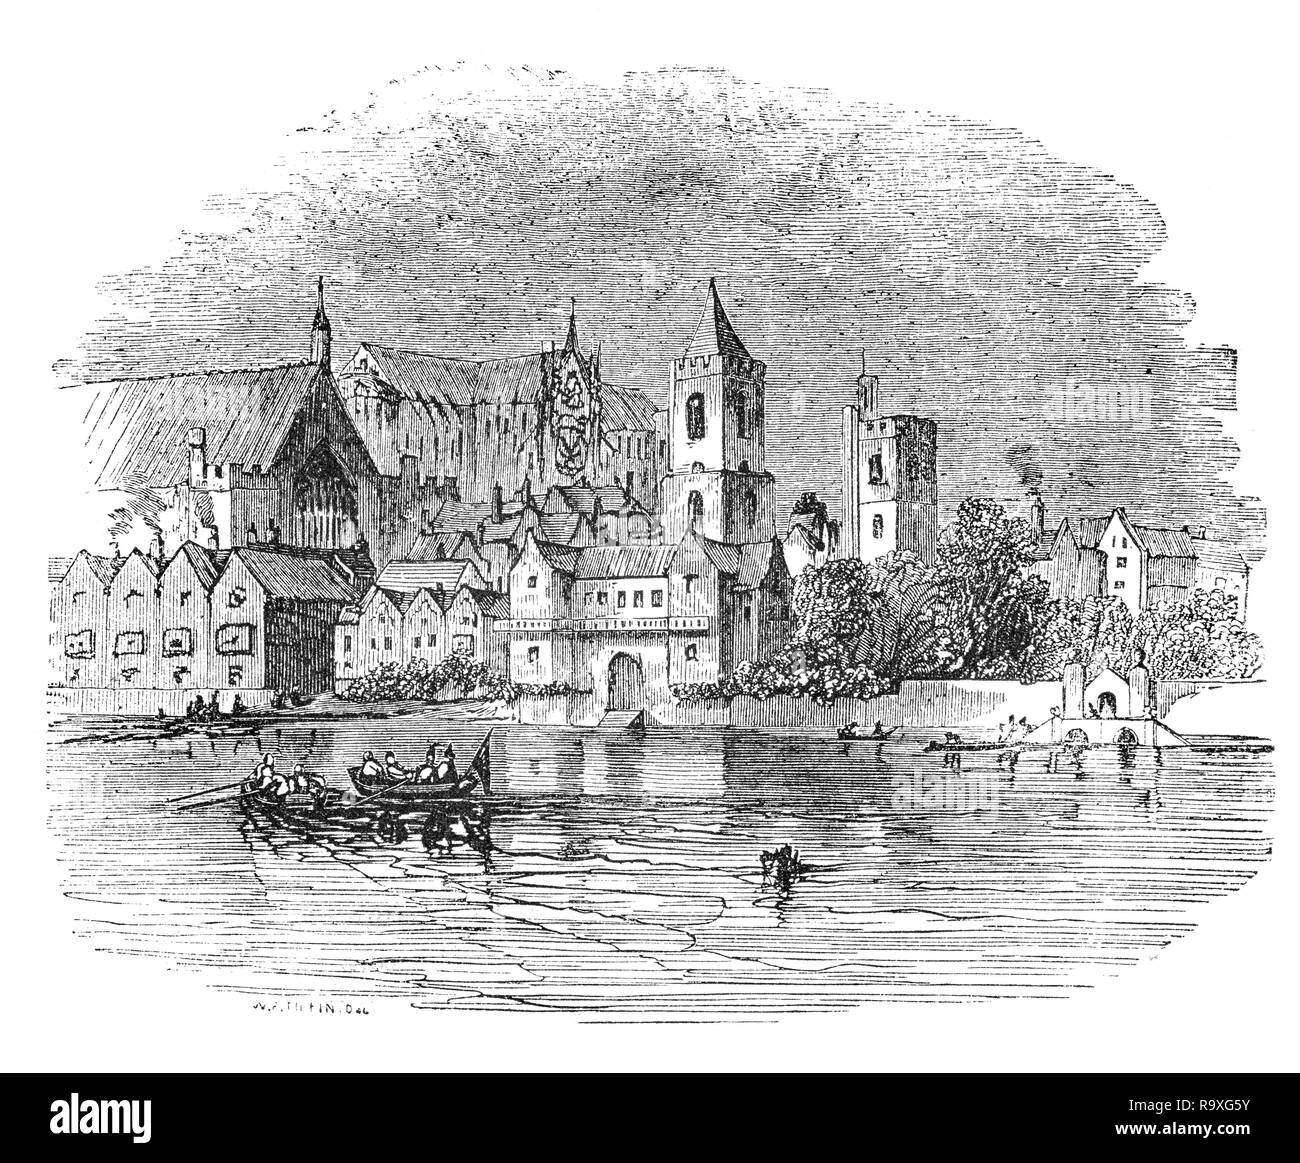 Um 1660 skizziert, von der Themse, der Siedlung, die sich um die Westminster Abbey, der Königspalast aufwuchs, und das Parlament, das als Westminster bekannt zu sein, war Teil der Grafschaft Middlesex und getrennt von der City von London. Stockfoto